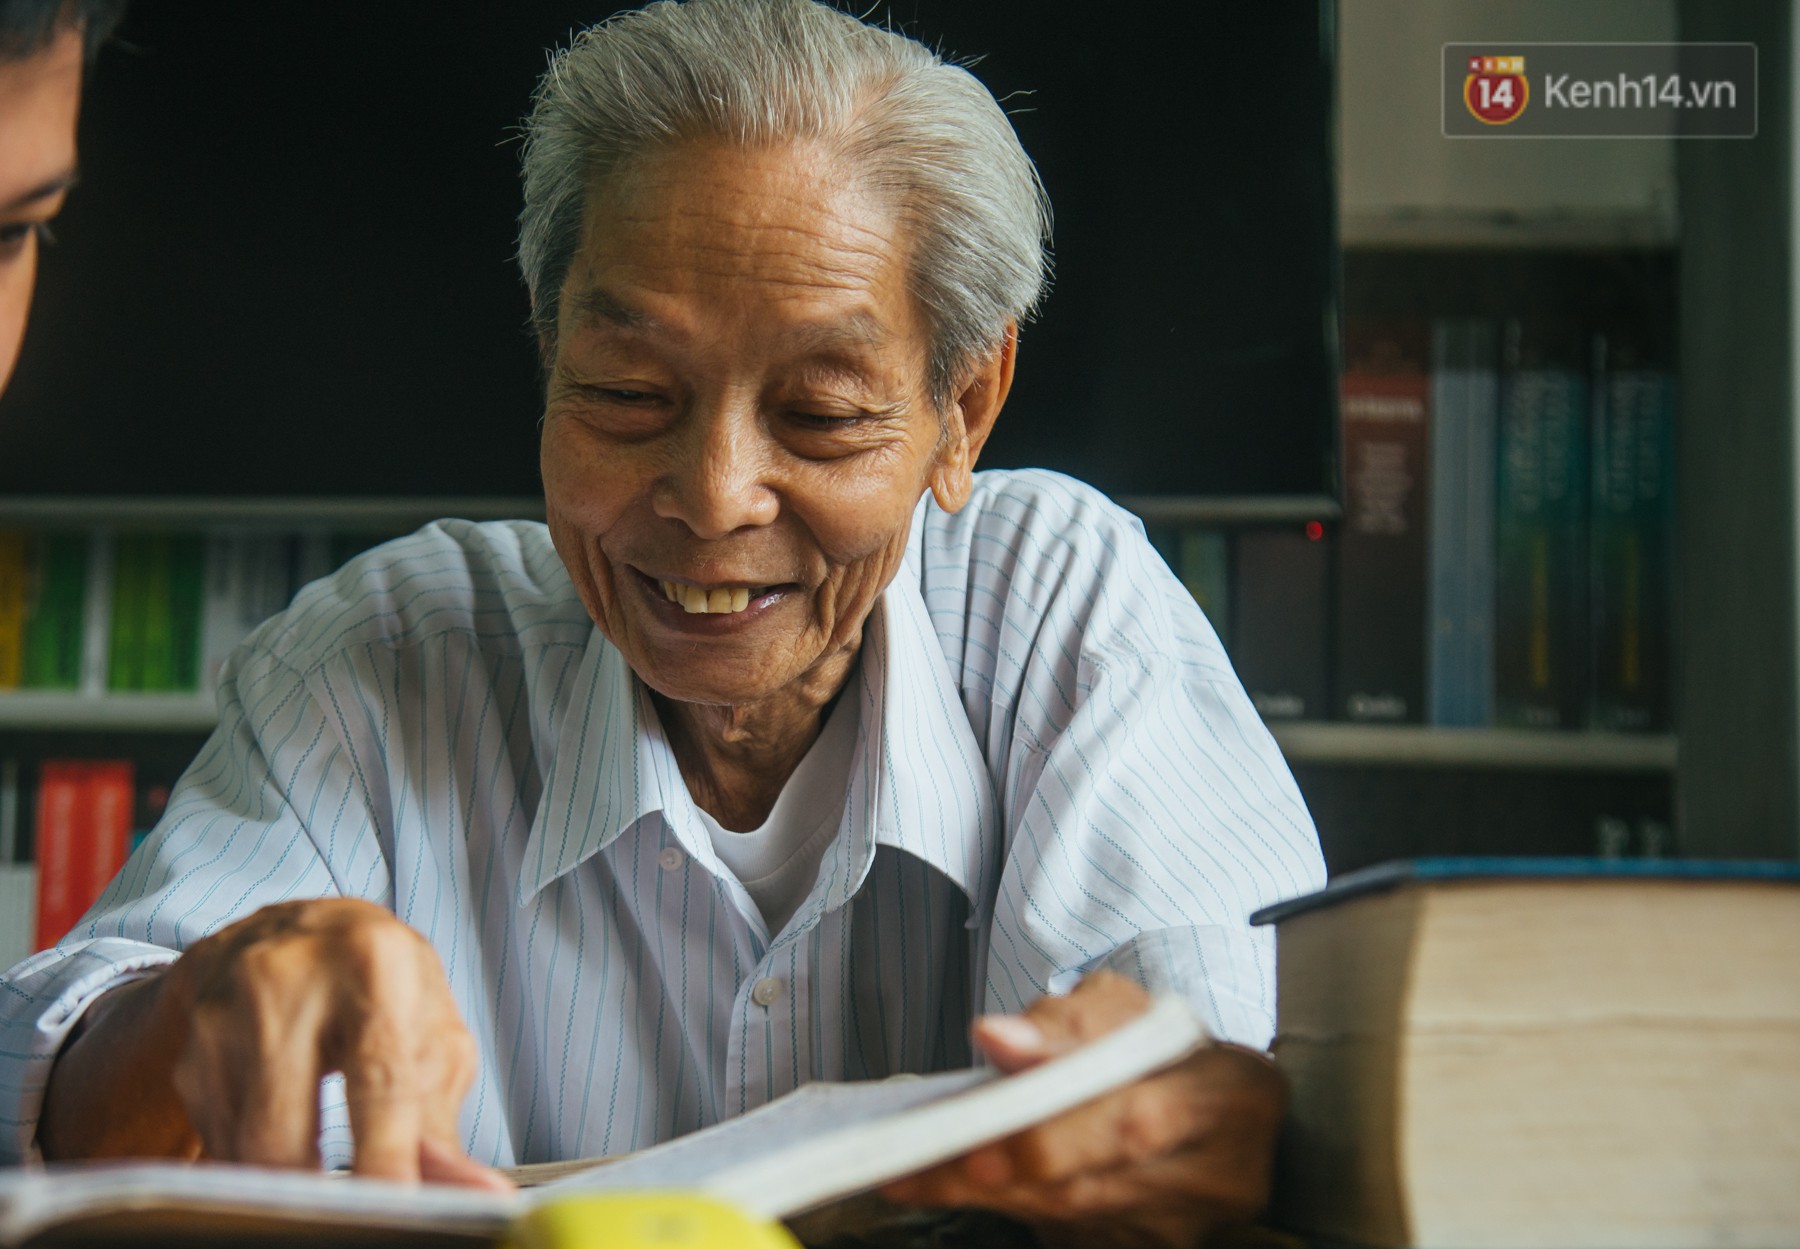 Chuyện ông cụ 77 tuổi ngồi ở thư viện Sài Gòn từ sáng đến tối mịt: Ăn cơm từ thiện, luyện học tiếng Anh - Ảnh 4.